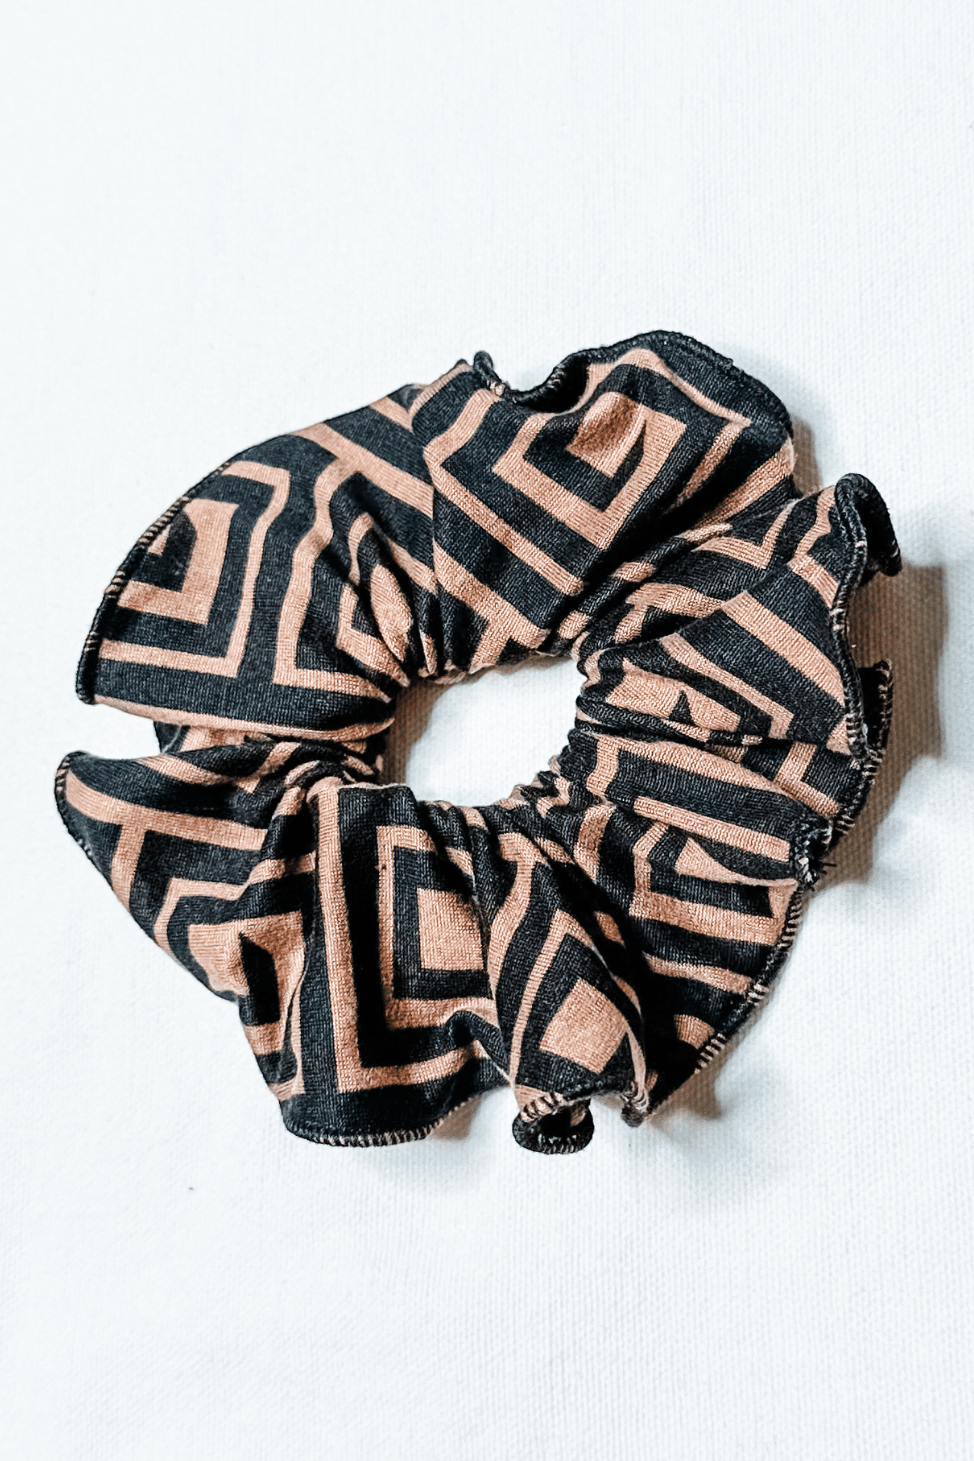 Scrunchies Accessories in Greek Key from Diane Kroe